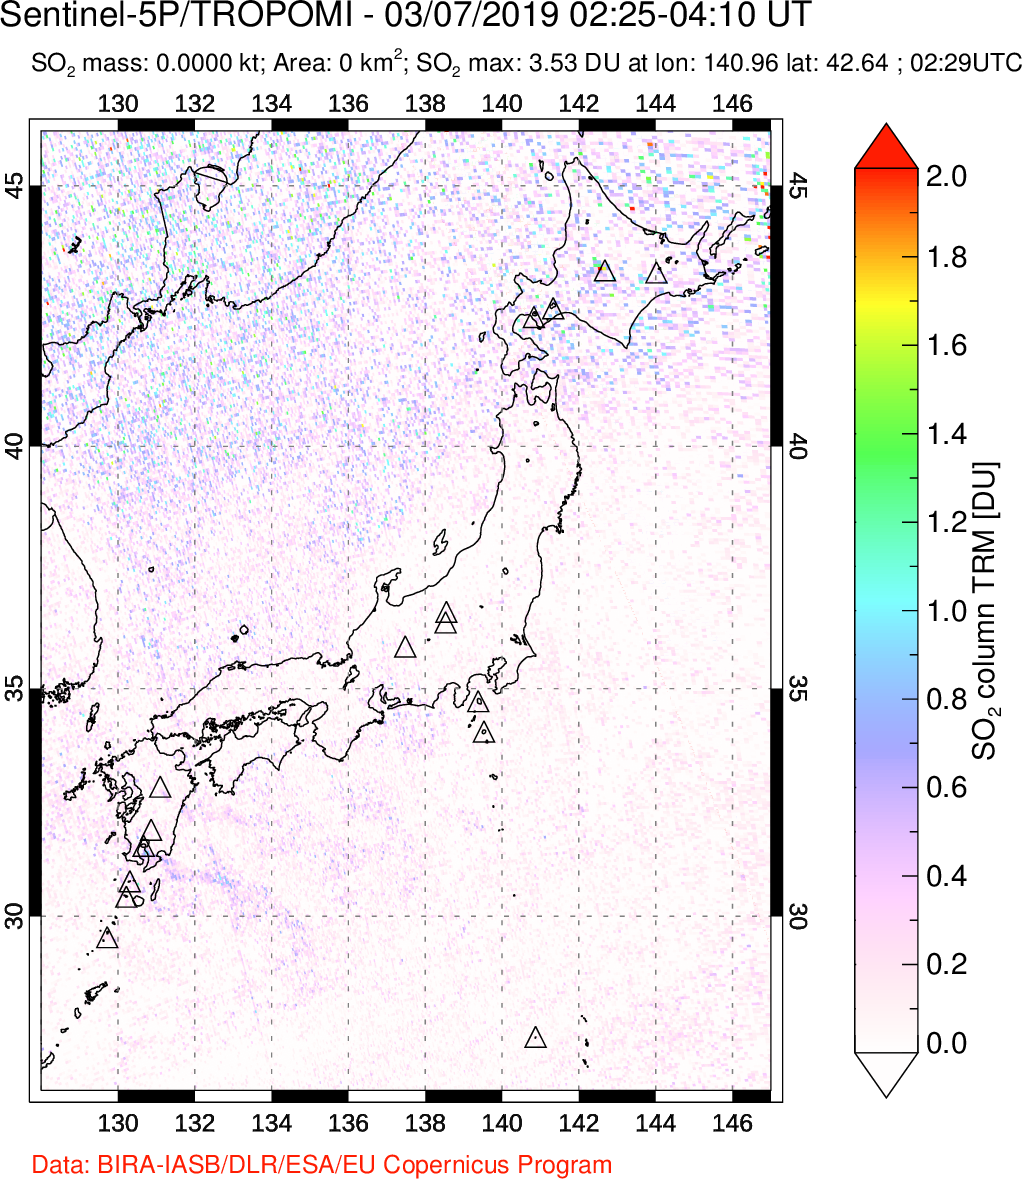 A sulfur dioxide image over Japan on Mar 07, 2019.